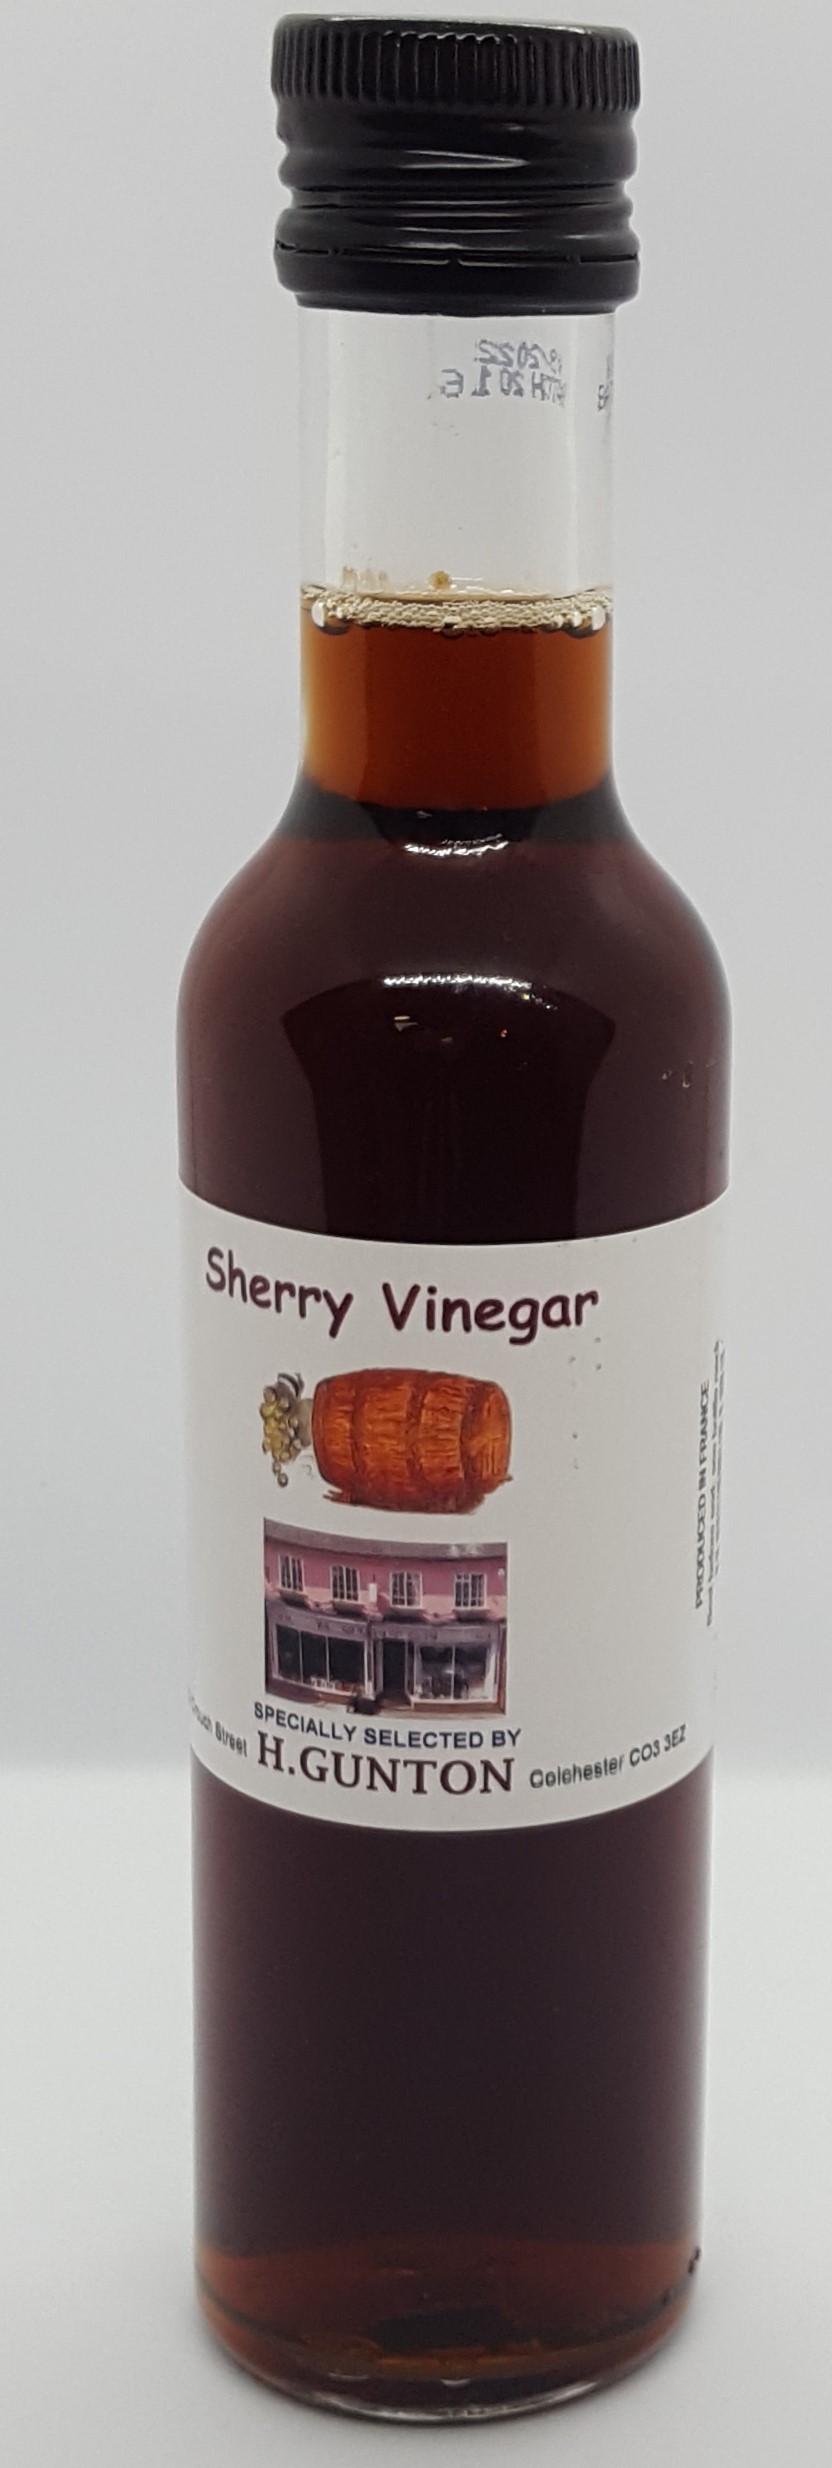 Guntons Sherry Vinegar